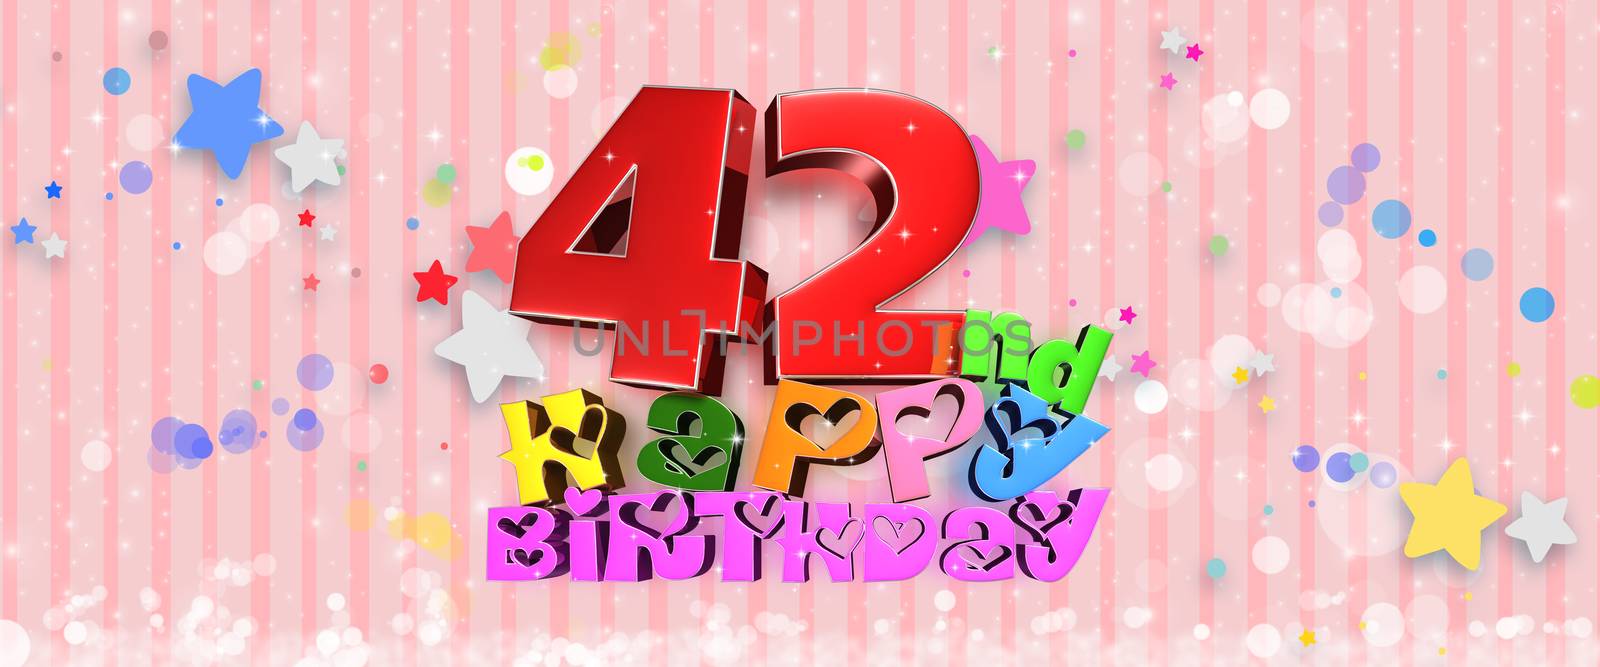 Happy Birthday 42th. by thitimontoyai